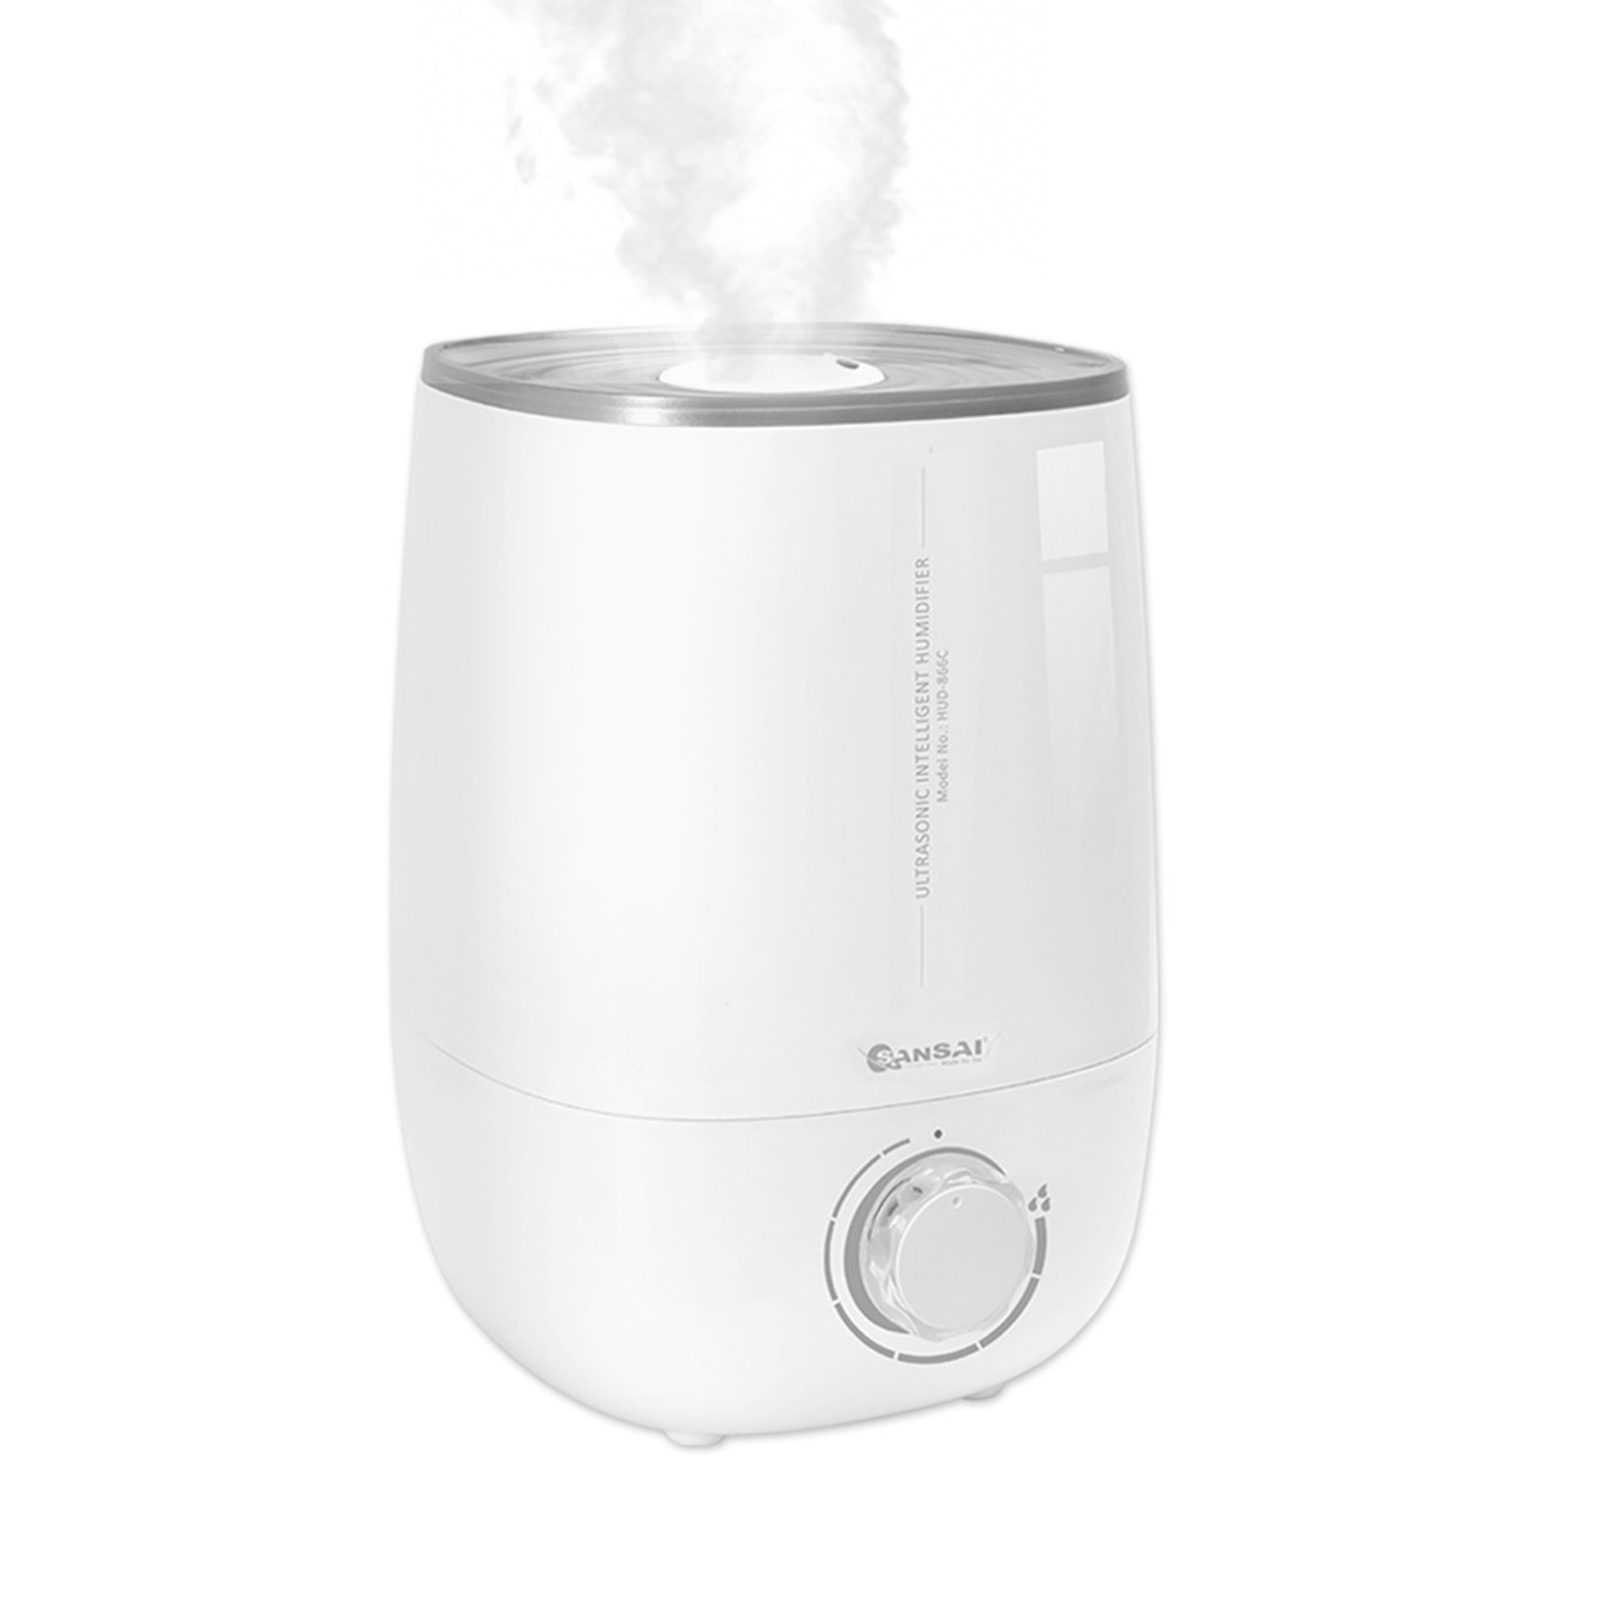 SANSAI Ultrasonic Humidifier 4.8L WHITE